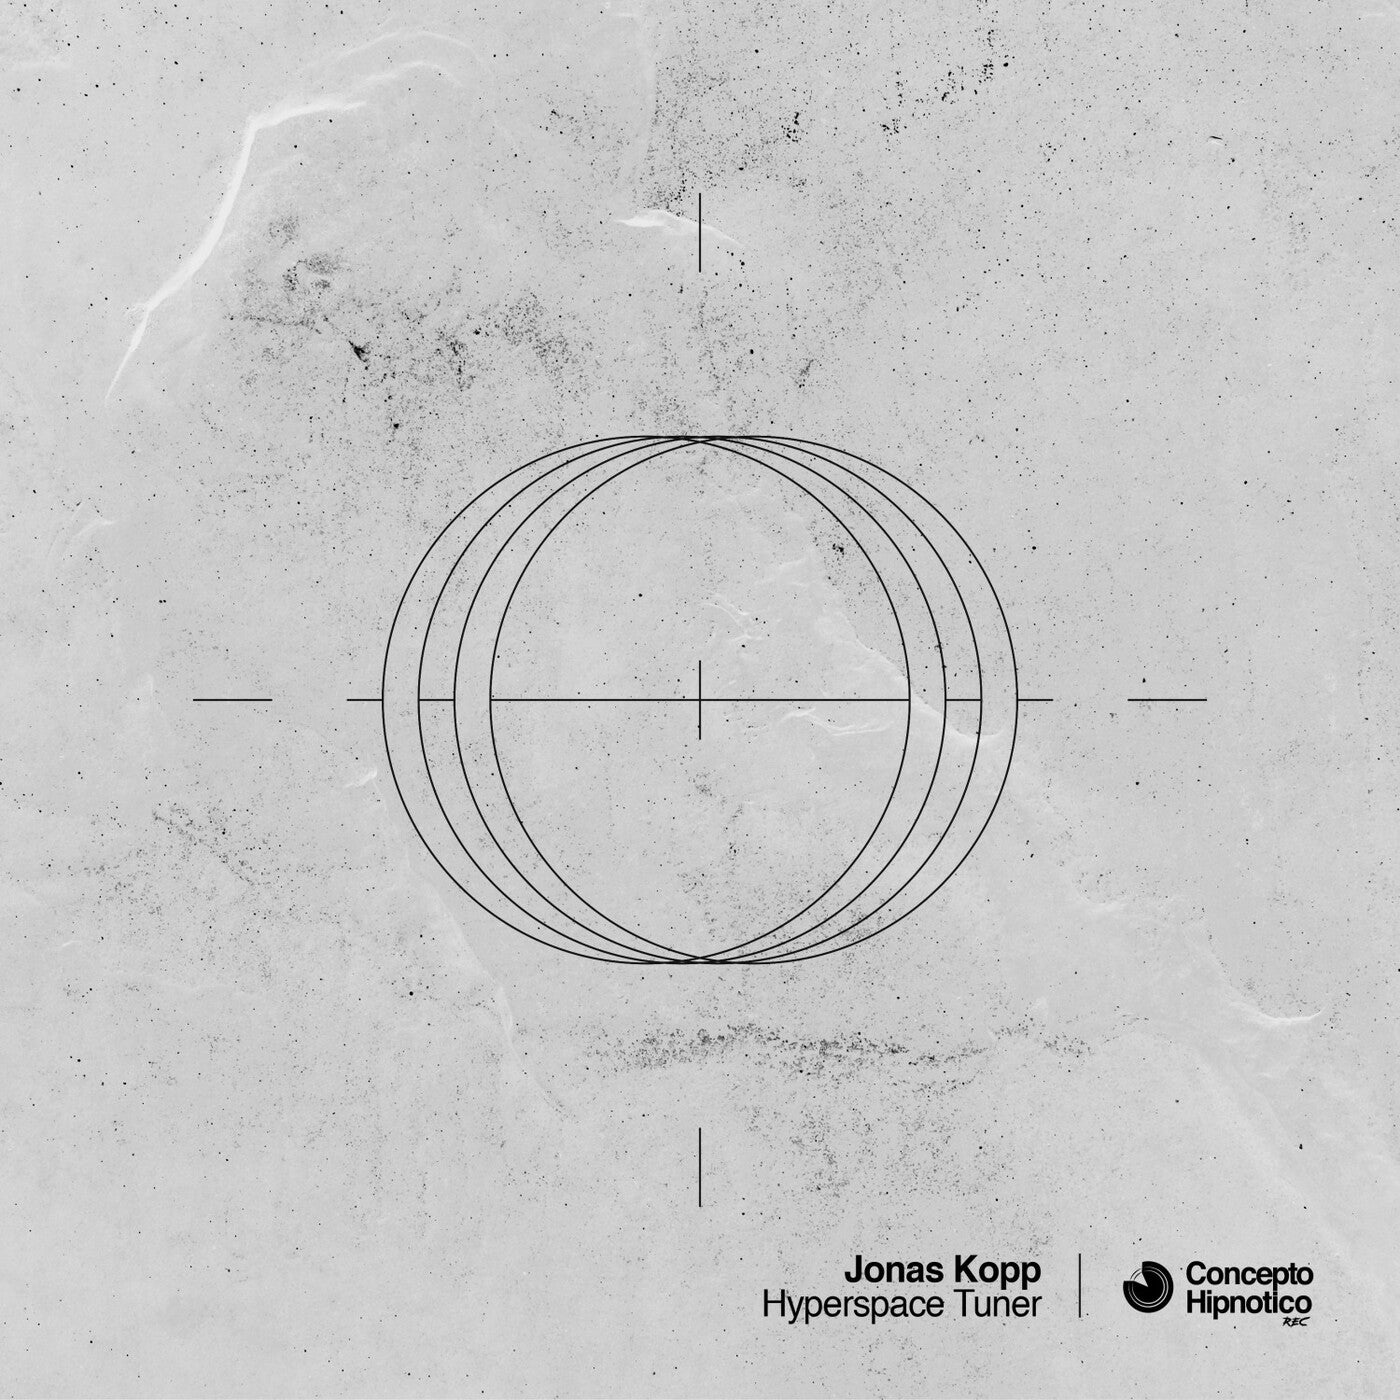 Cover - Jonas Kopp - 1 Can'7 S33 Y0v (Original Mix)